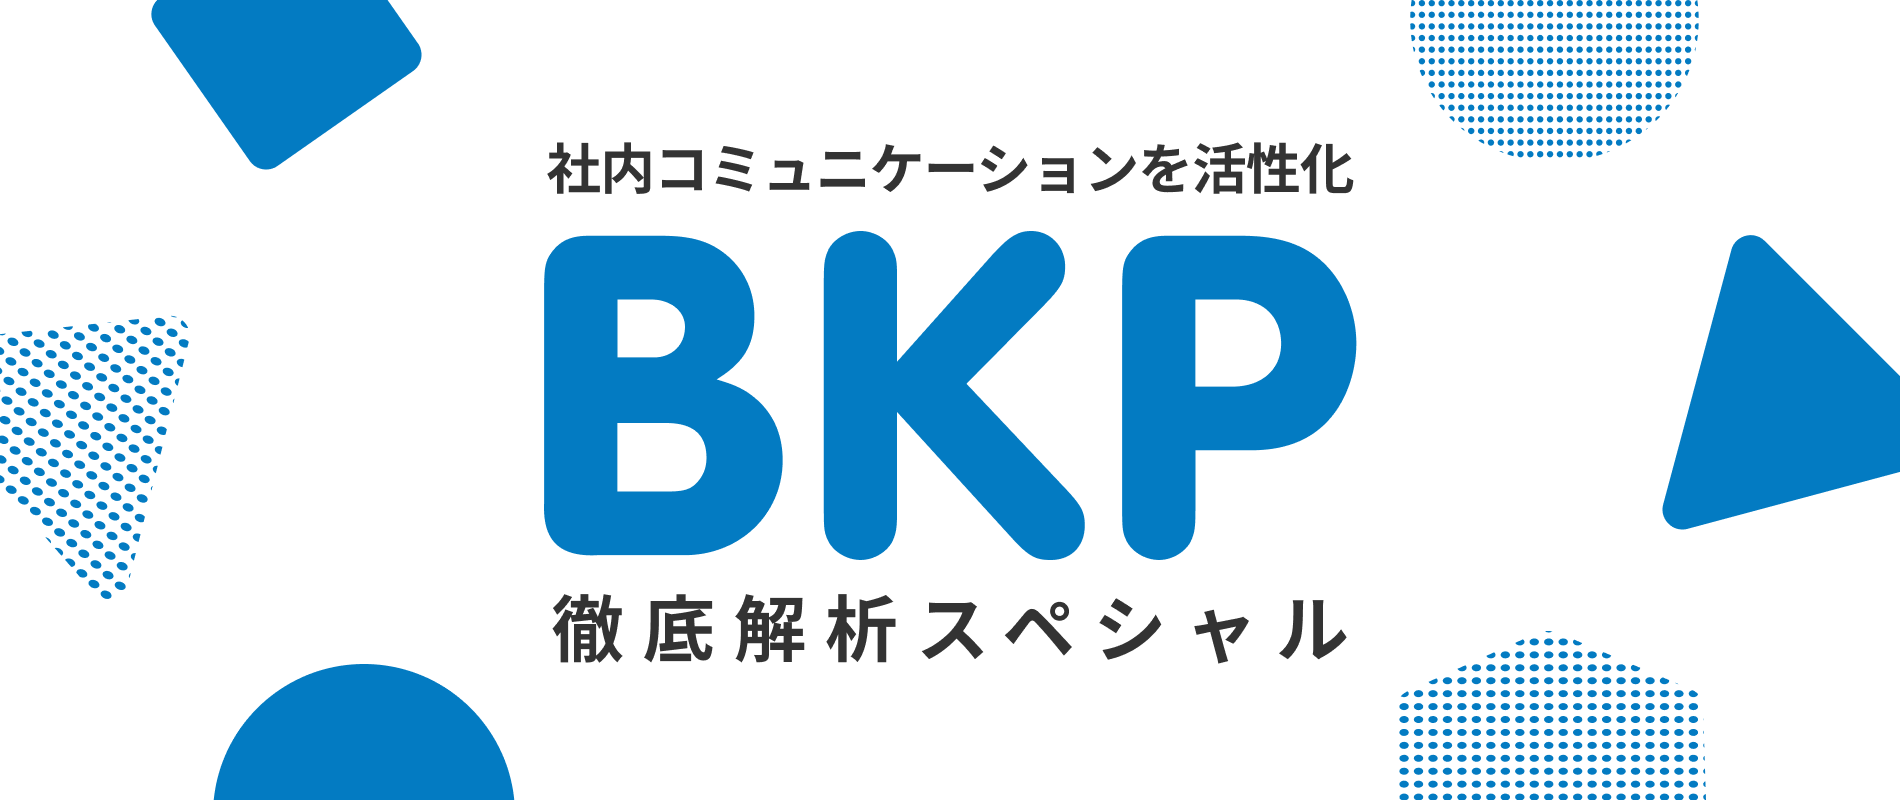 【記事公開】リモートで社内コミュニケーションを活性化させる取り組み「BKP」に関する記事公開のお知らせ｜株式会社サイダス